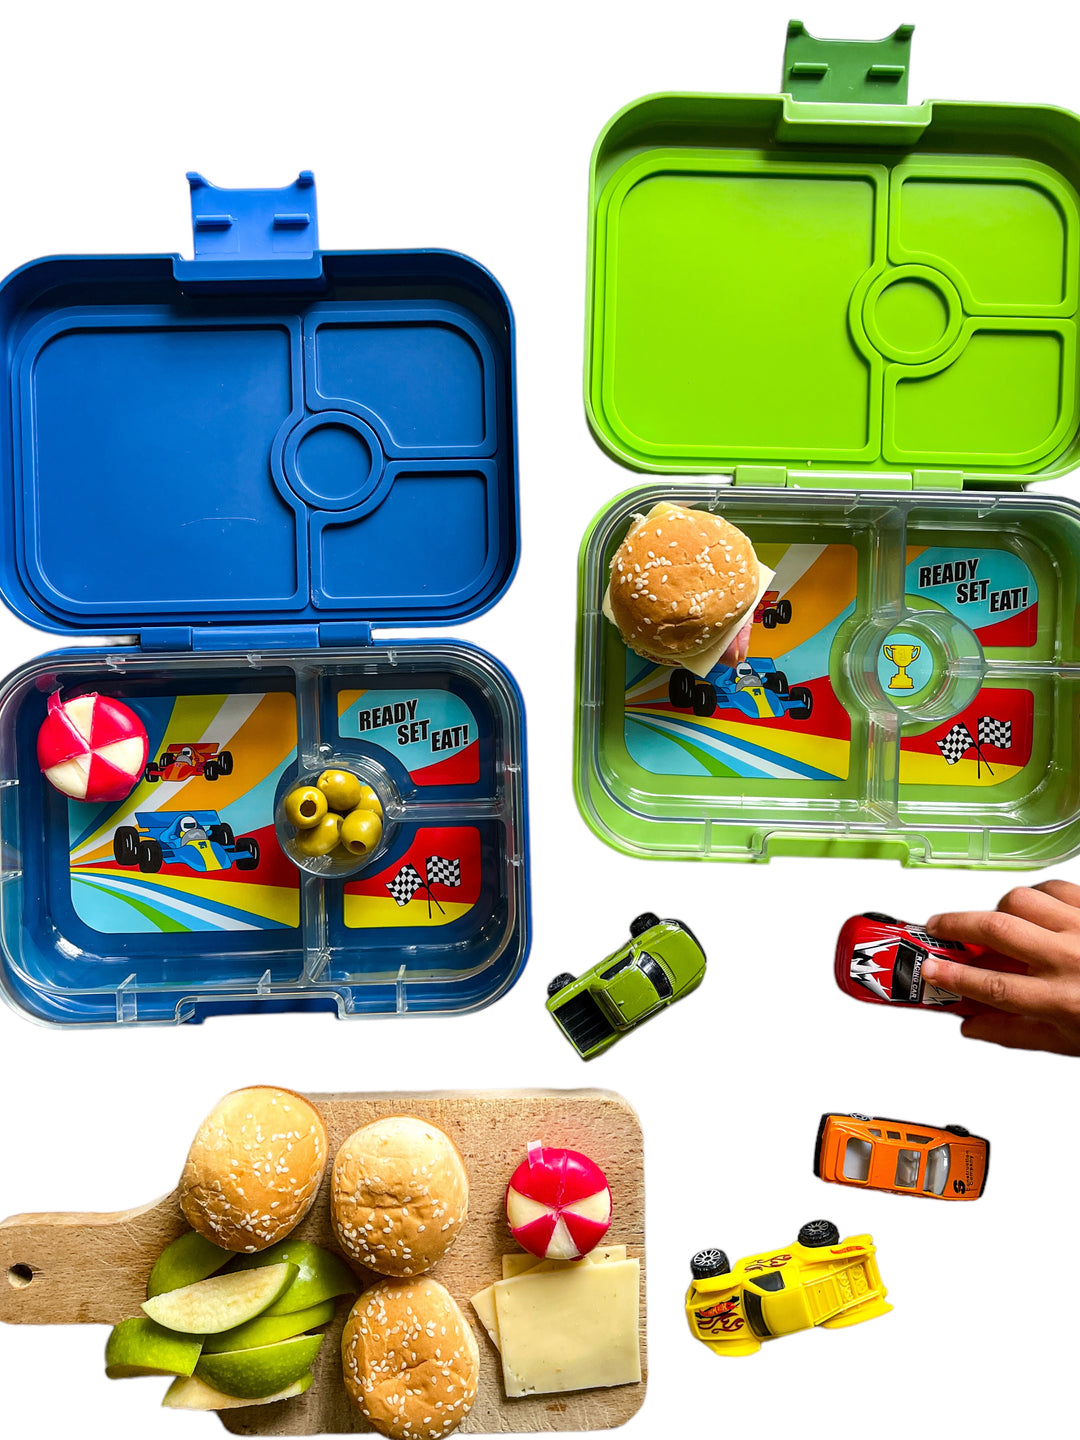 Yumbox Panino - Leakproof Bento Lunch Box - ZukaBaby